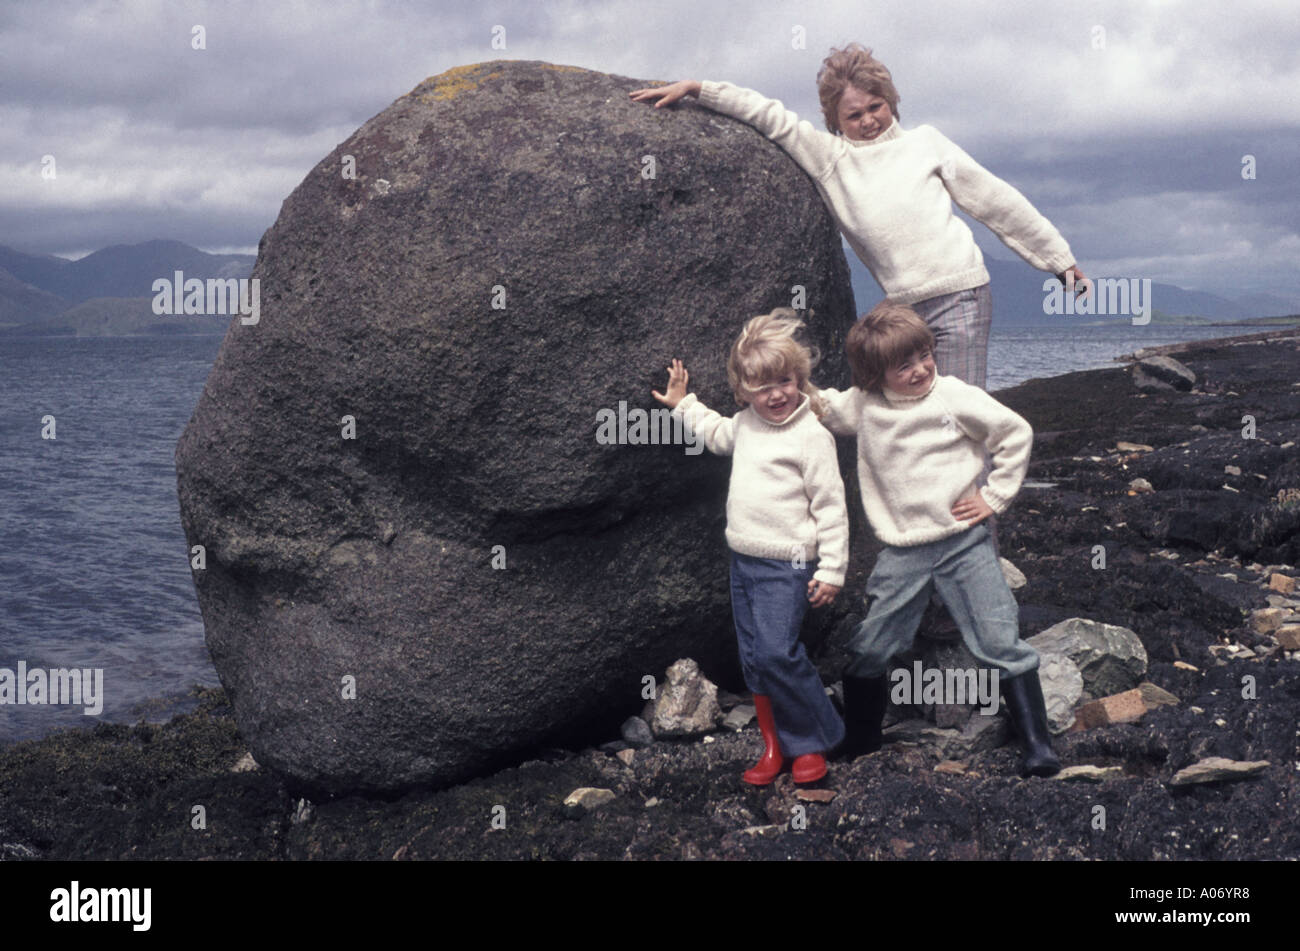 Schottland windigen loch Seite 3 Kinder in Aran Jumper auf schottischen Rundreise pose in 70er Drücken waterside Boulder für die Familie Foto album DE Stockfoto